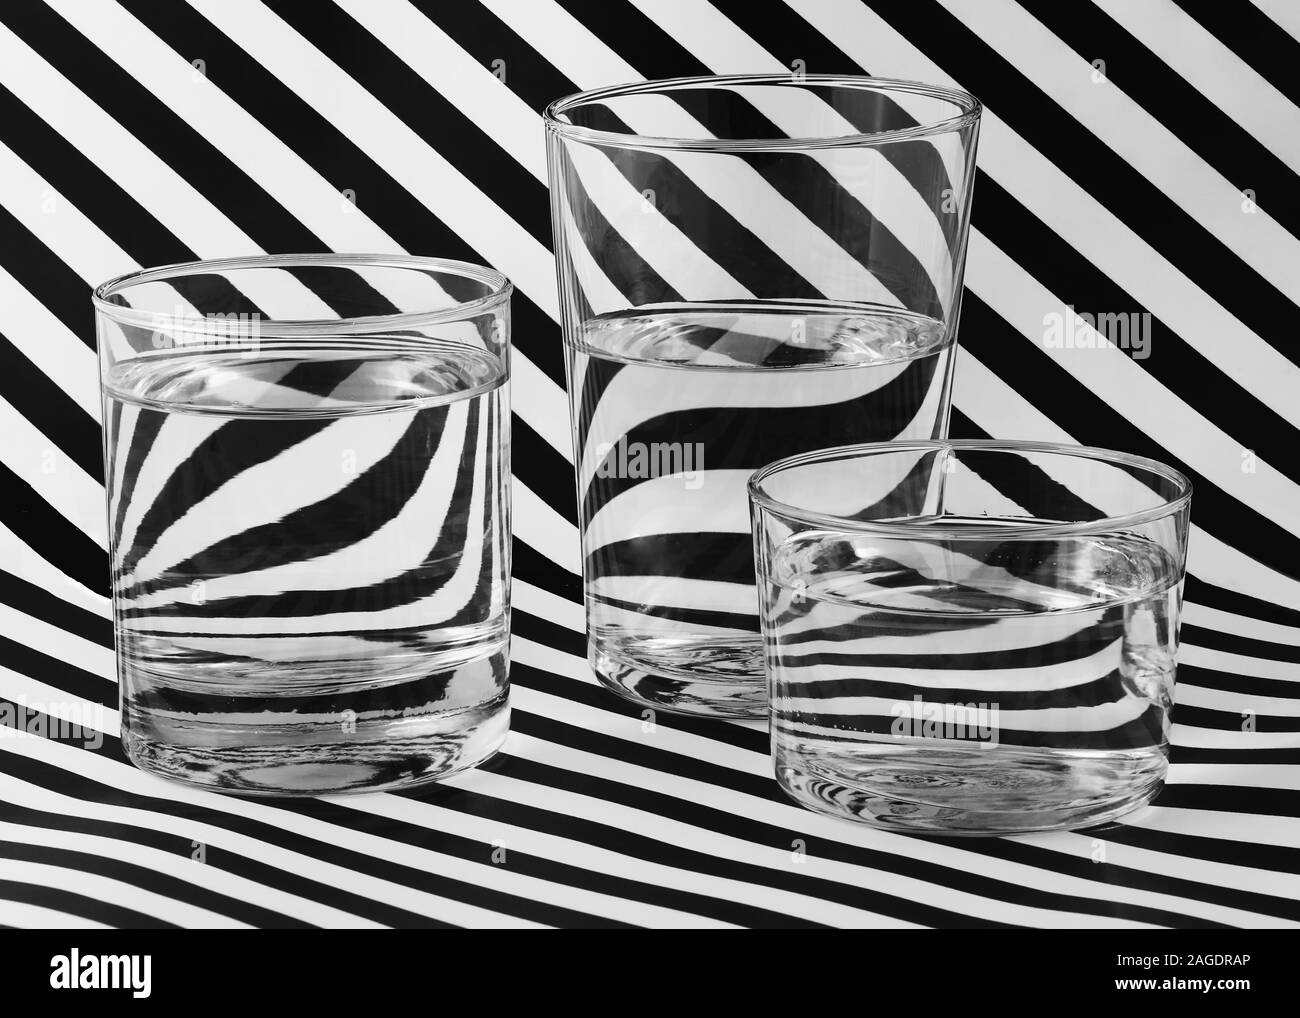 Superficie a strisce bianche e nere con tre bicchieri riempiti con acqua - ottimo per uno sfondo Foto Stock